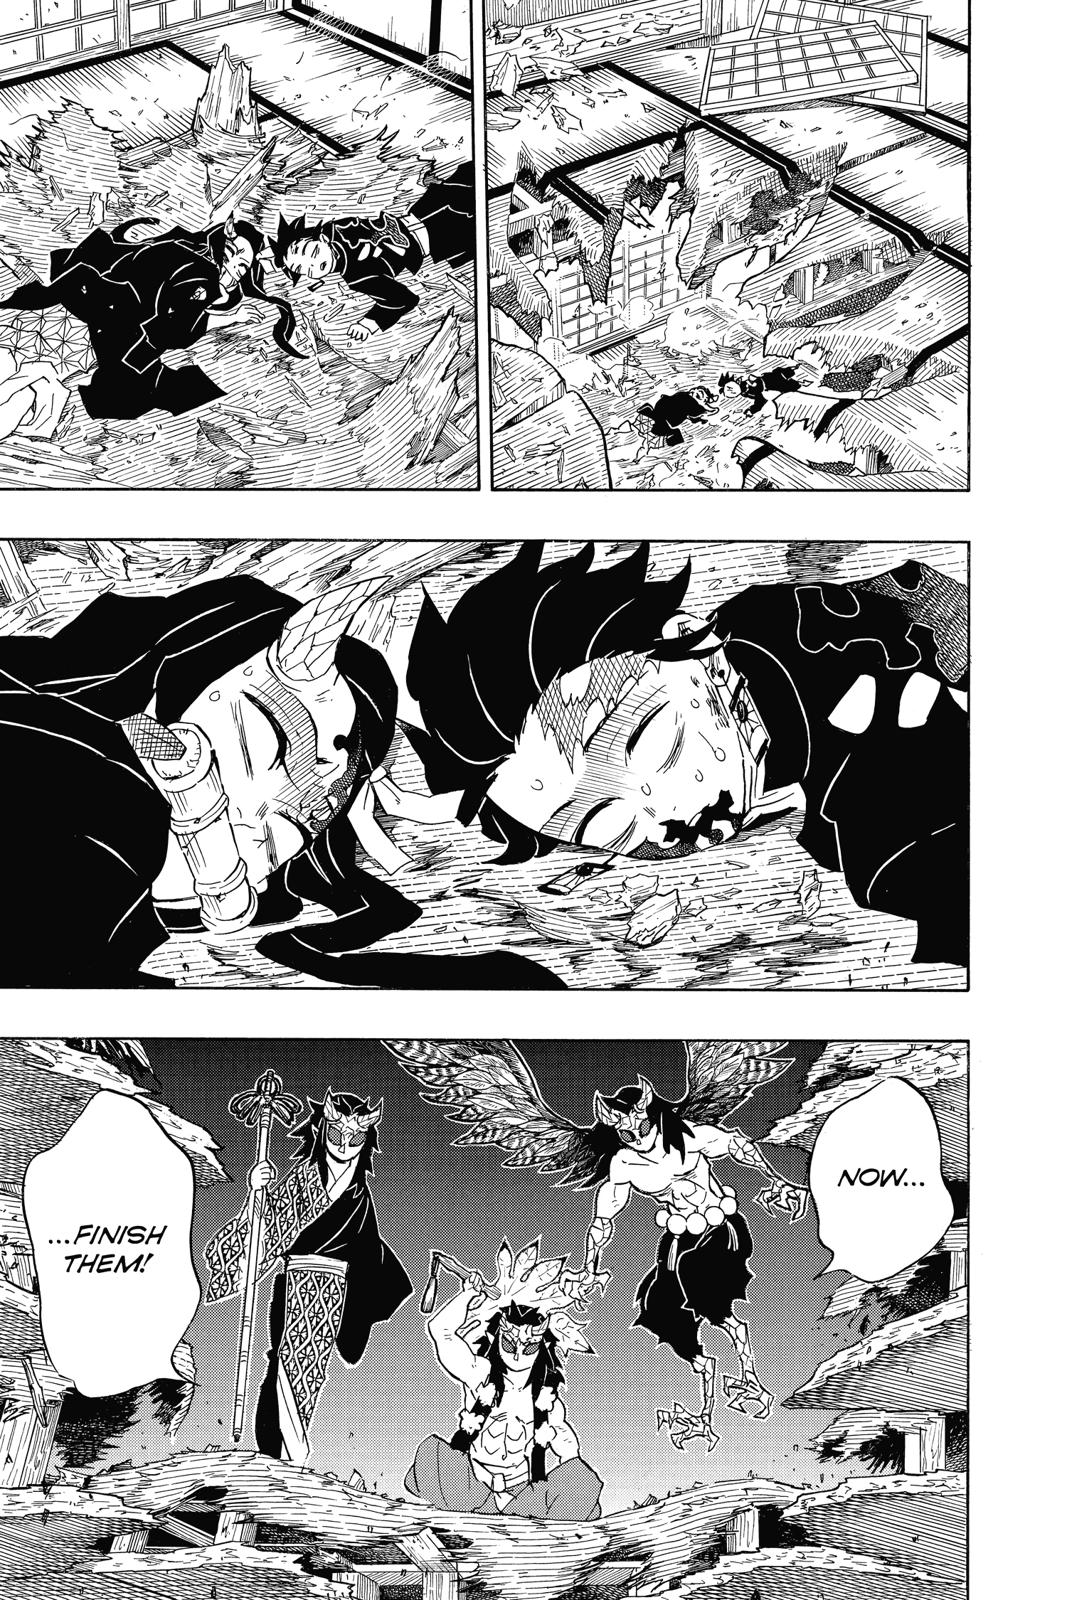 Demon Slayer Manga Manga Chapter - 110 - image 14